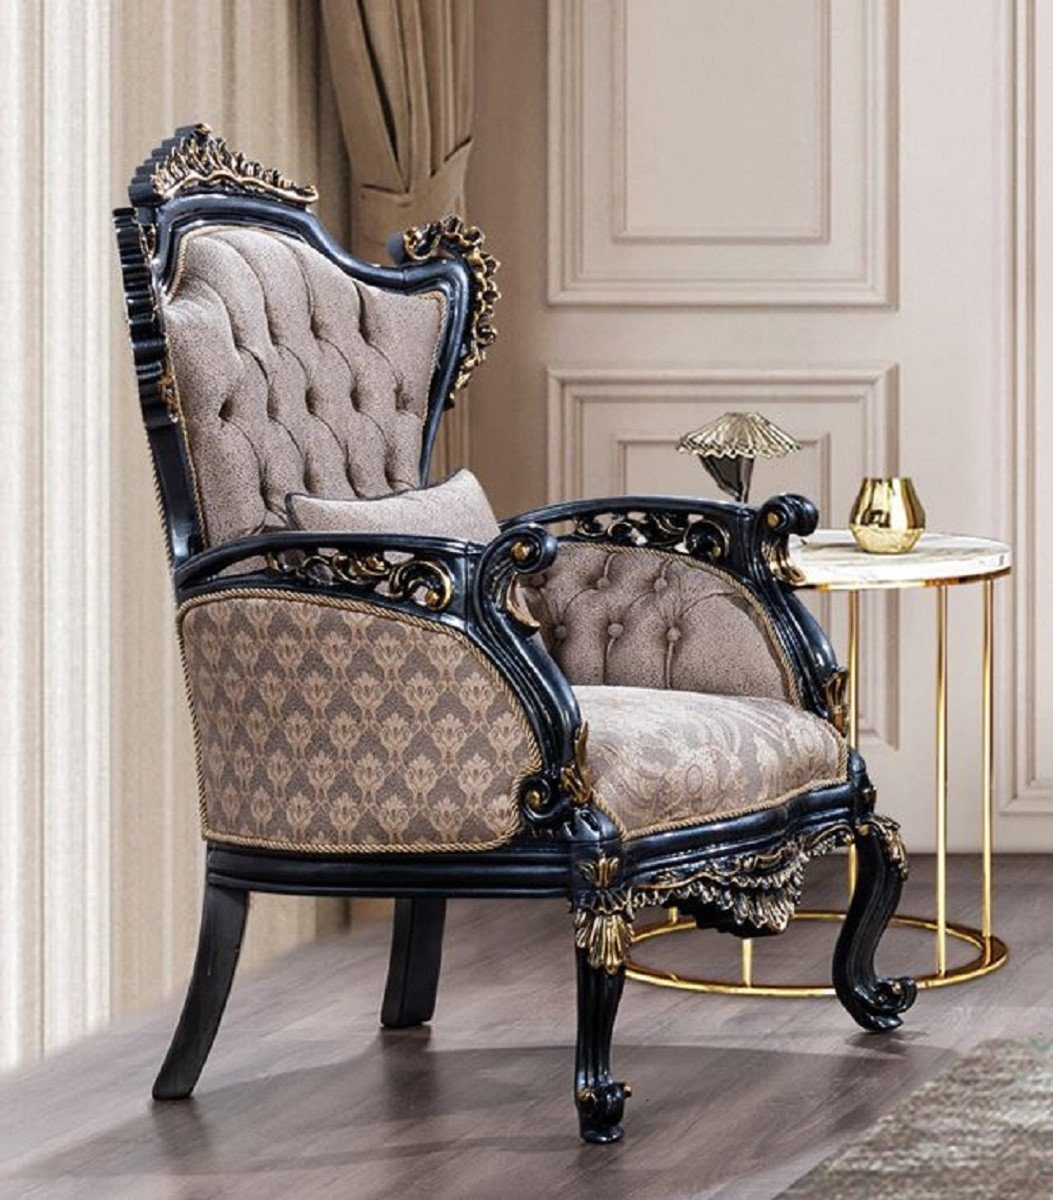 / mit Sessel Casa Barock Einrichtung Padrino Wohnzimmer - / Prunkvoller Muster Grau Blau - Casa im Luxus Möbel elegantem Padrino Möbel Barock - Gold Sessel Sessel Wohnzimmer Luxus Barockstil - Barock